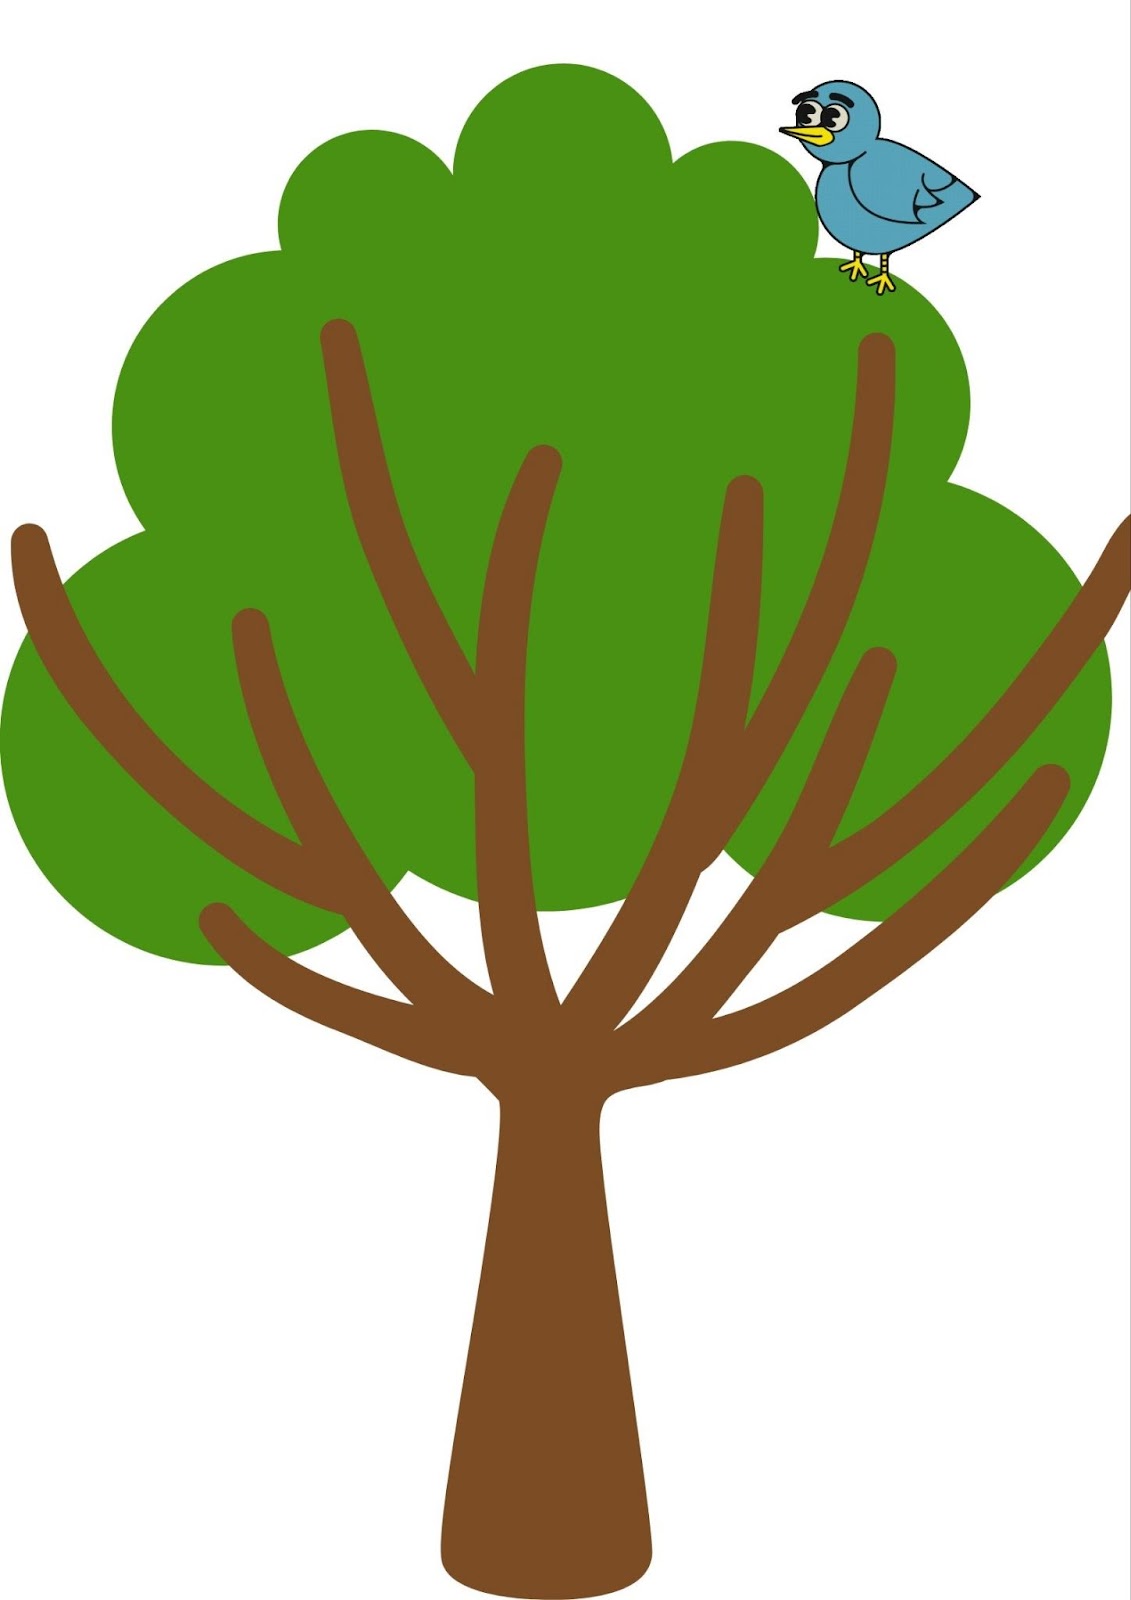 La imagen muestra un pájaro sobre un árbol.